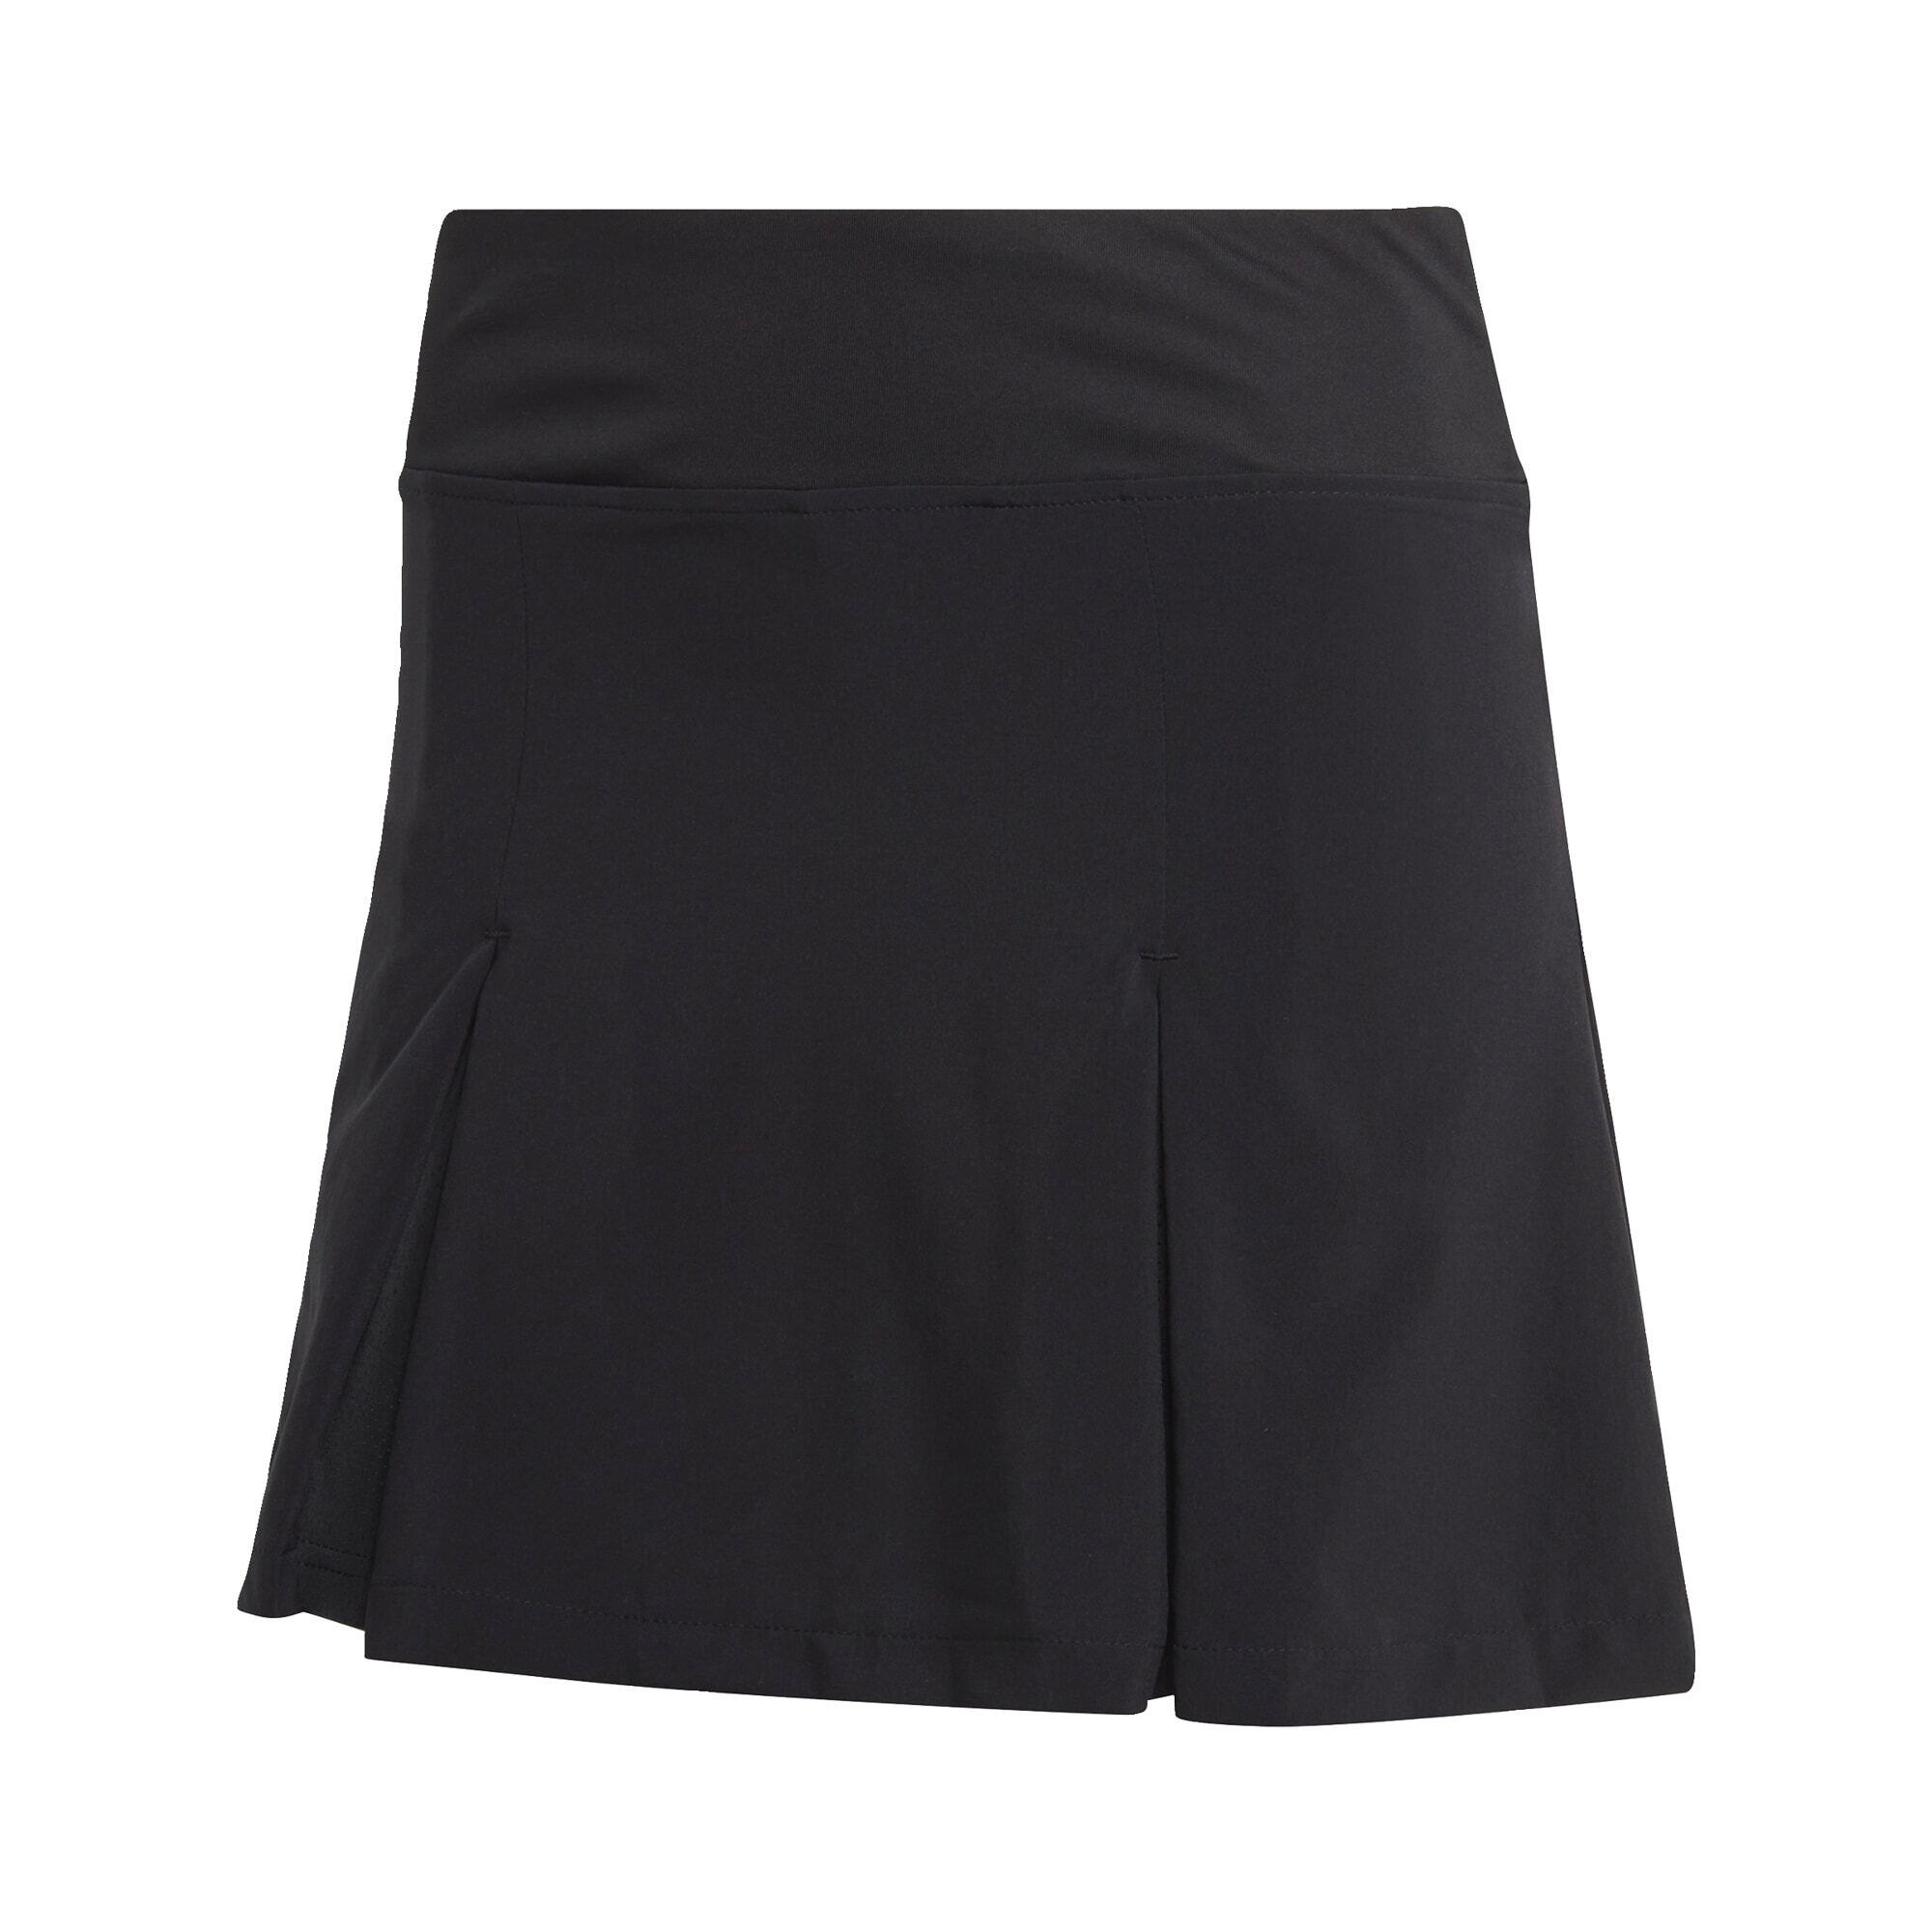 Club Tennis Pleated Skirt 2/5